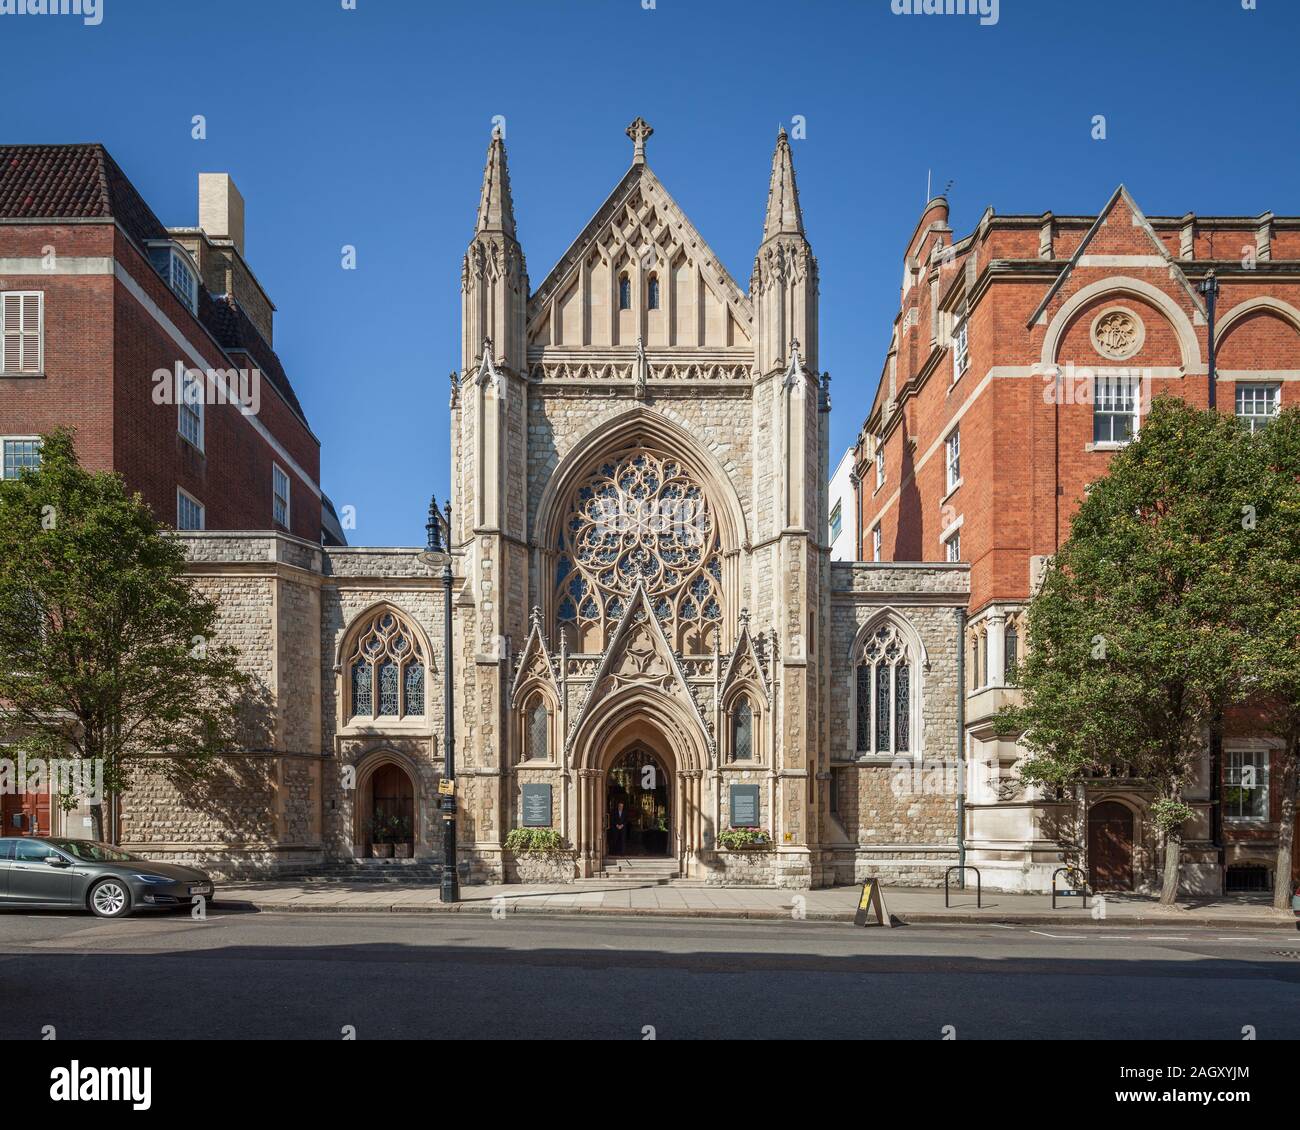 L'église de la rue de la ferme, Mayfair, London, UK Banque D'Images